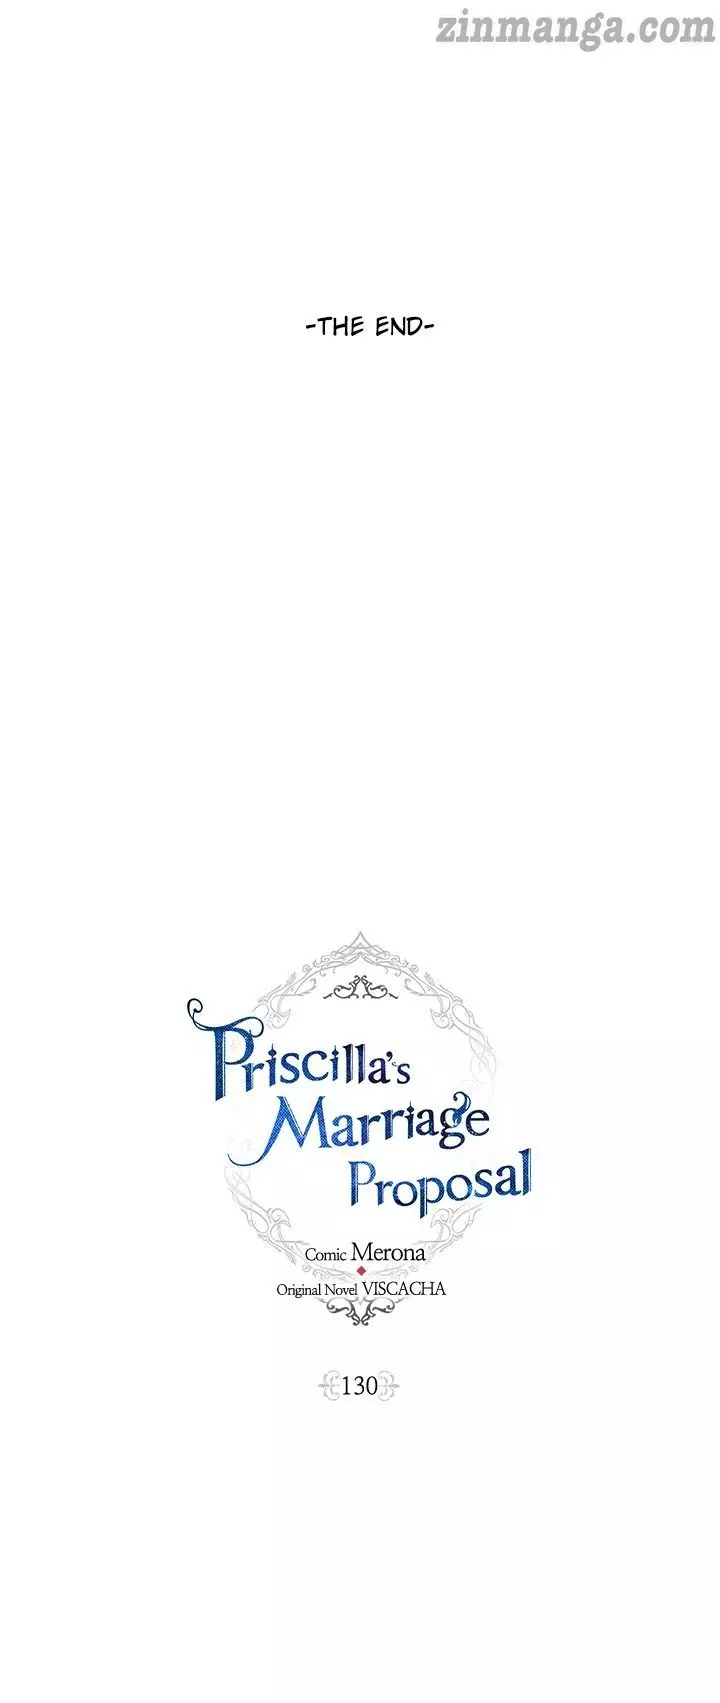 Priscilla's Marriage Request - 130 page 30-36992e9a